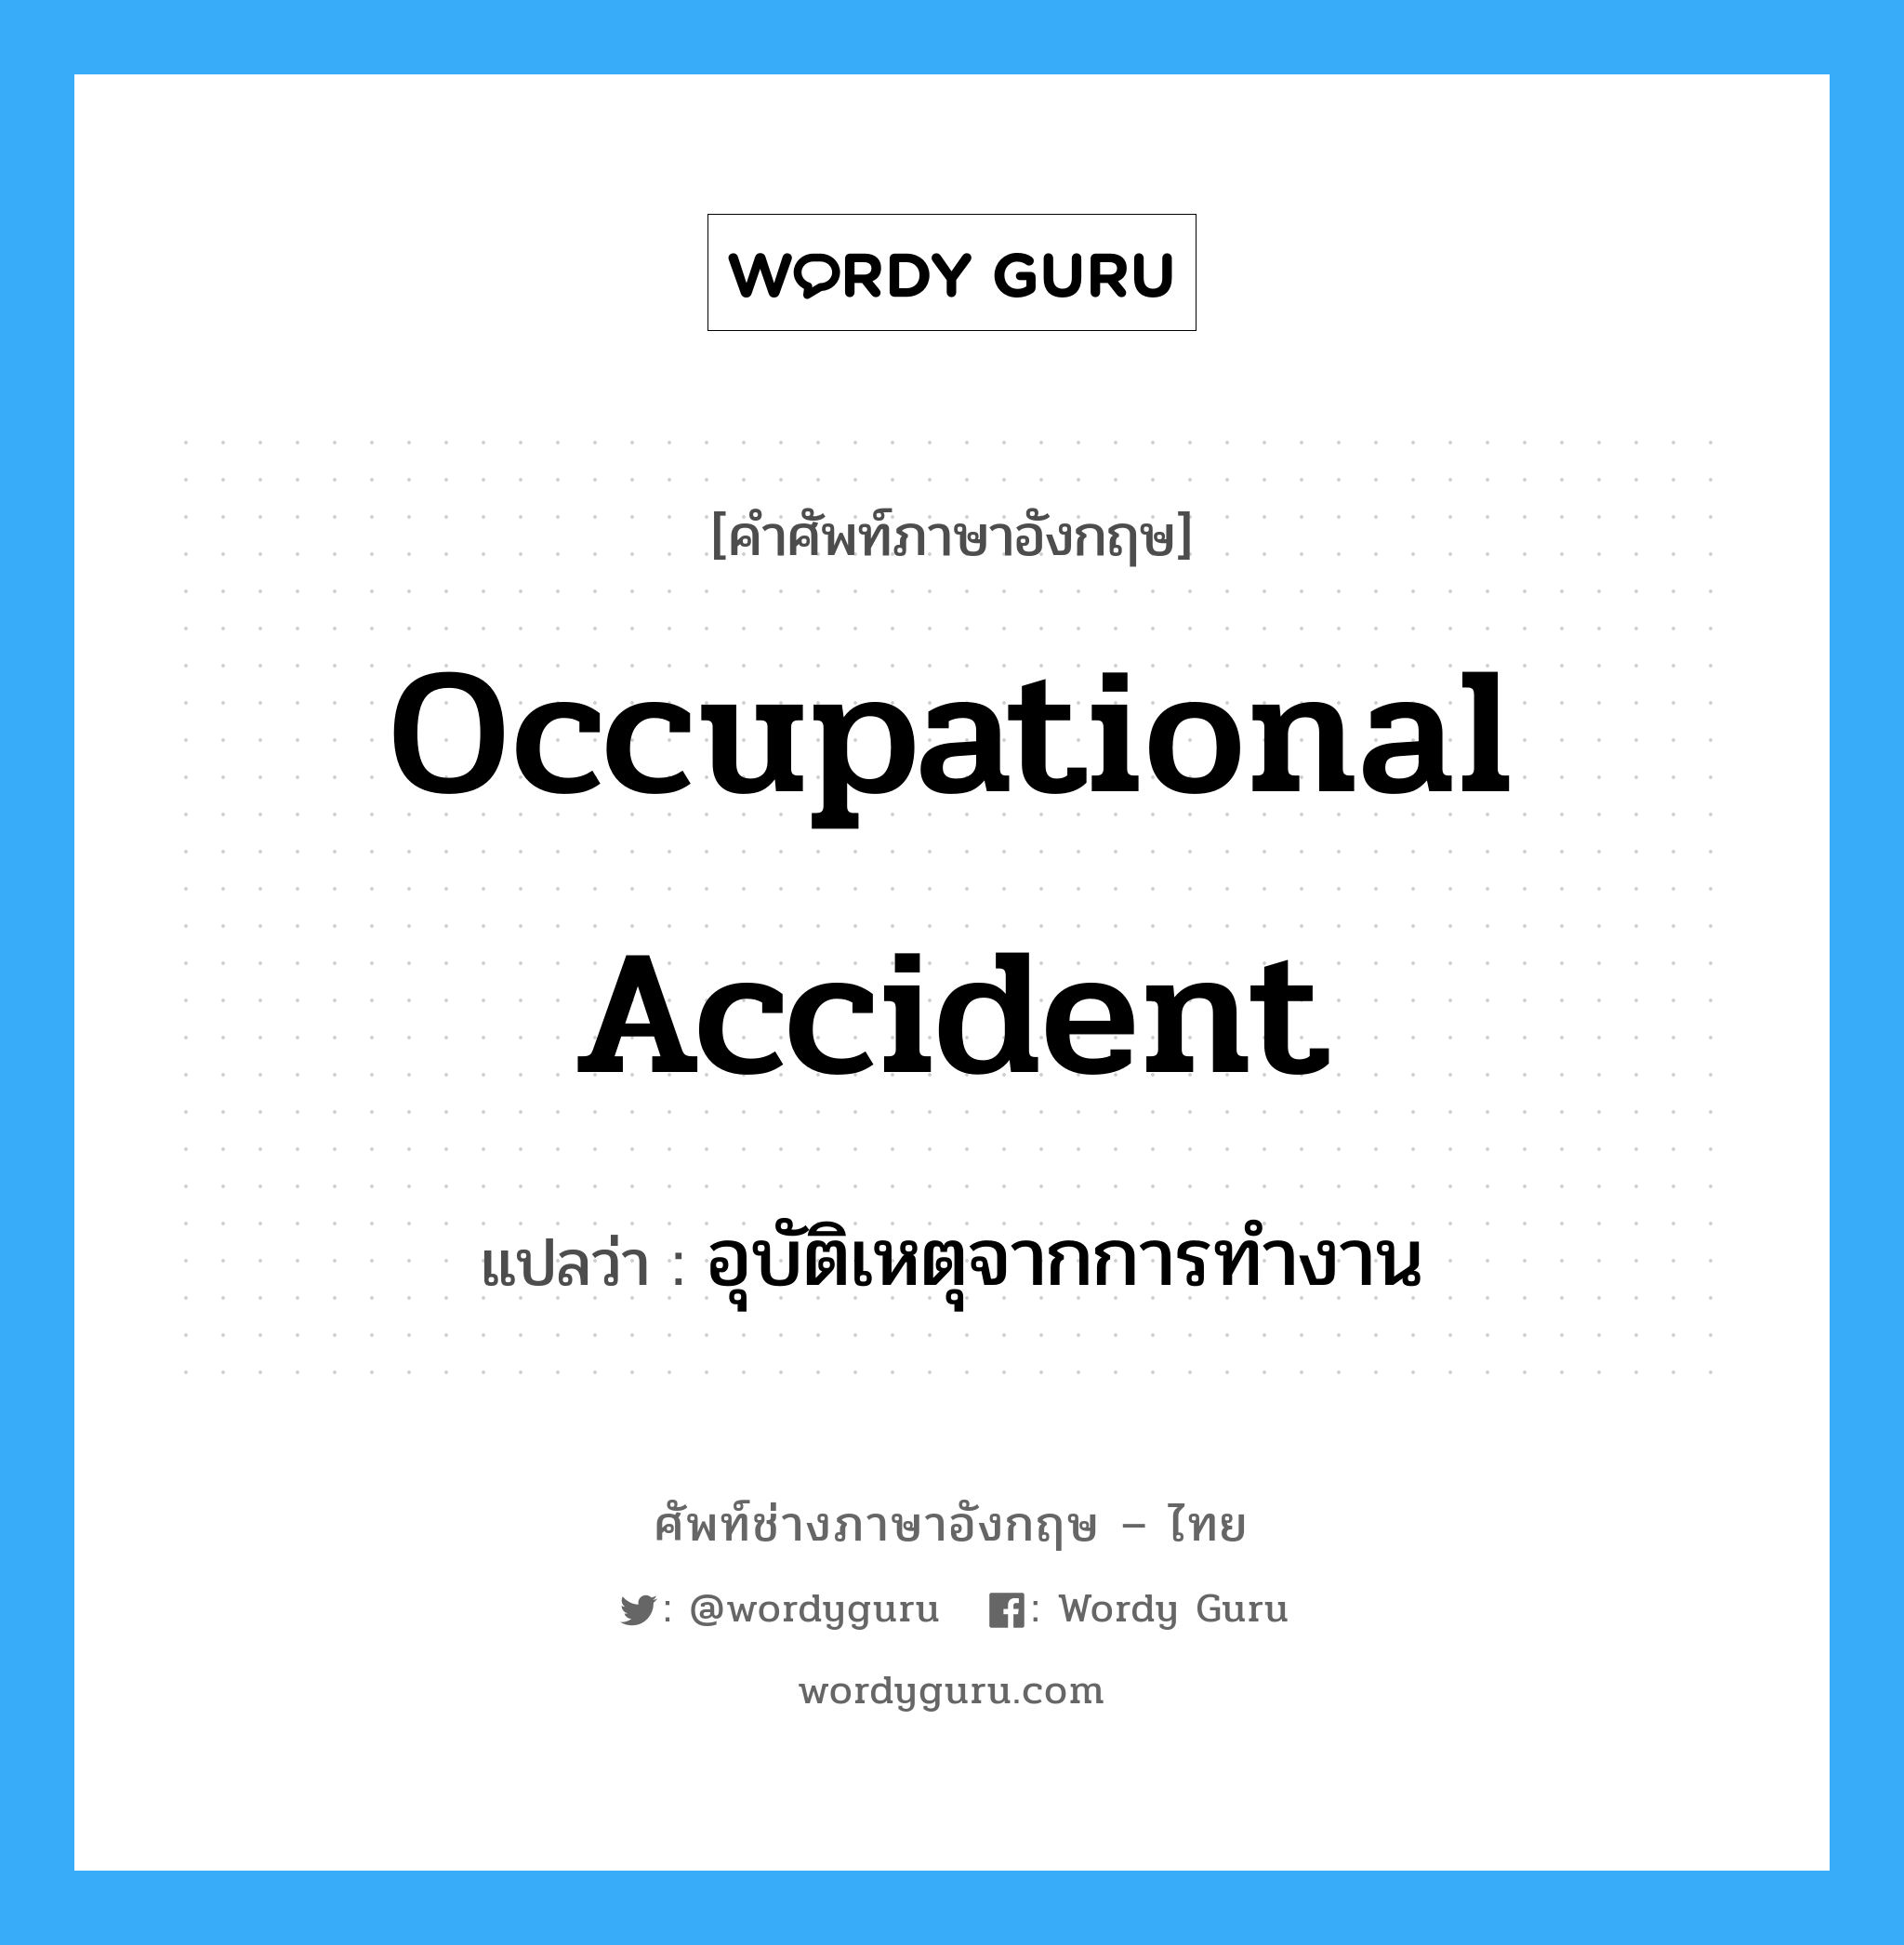 อุบัติเหตุจากการทำงาน ภาษาอังกฤษ?, คำศัพท์ช่างภาษาอังกฤษ - ไทย อุบัติเหตุจากการทำงาน คำศัพท์ภาษาอังกฤษ อุบัติเหตุจากการทำงาน แปลว่า Occupational Accident